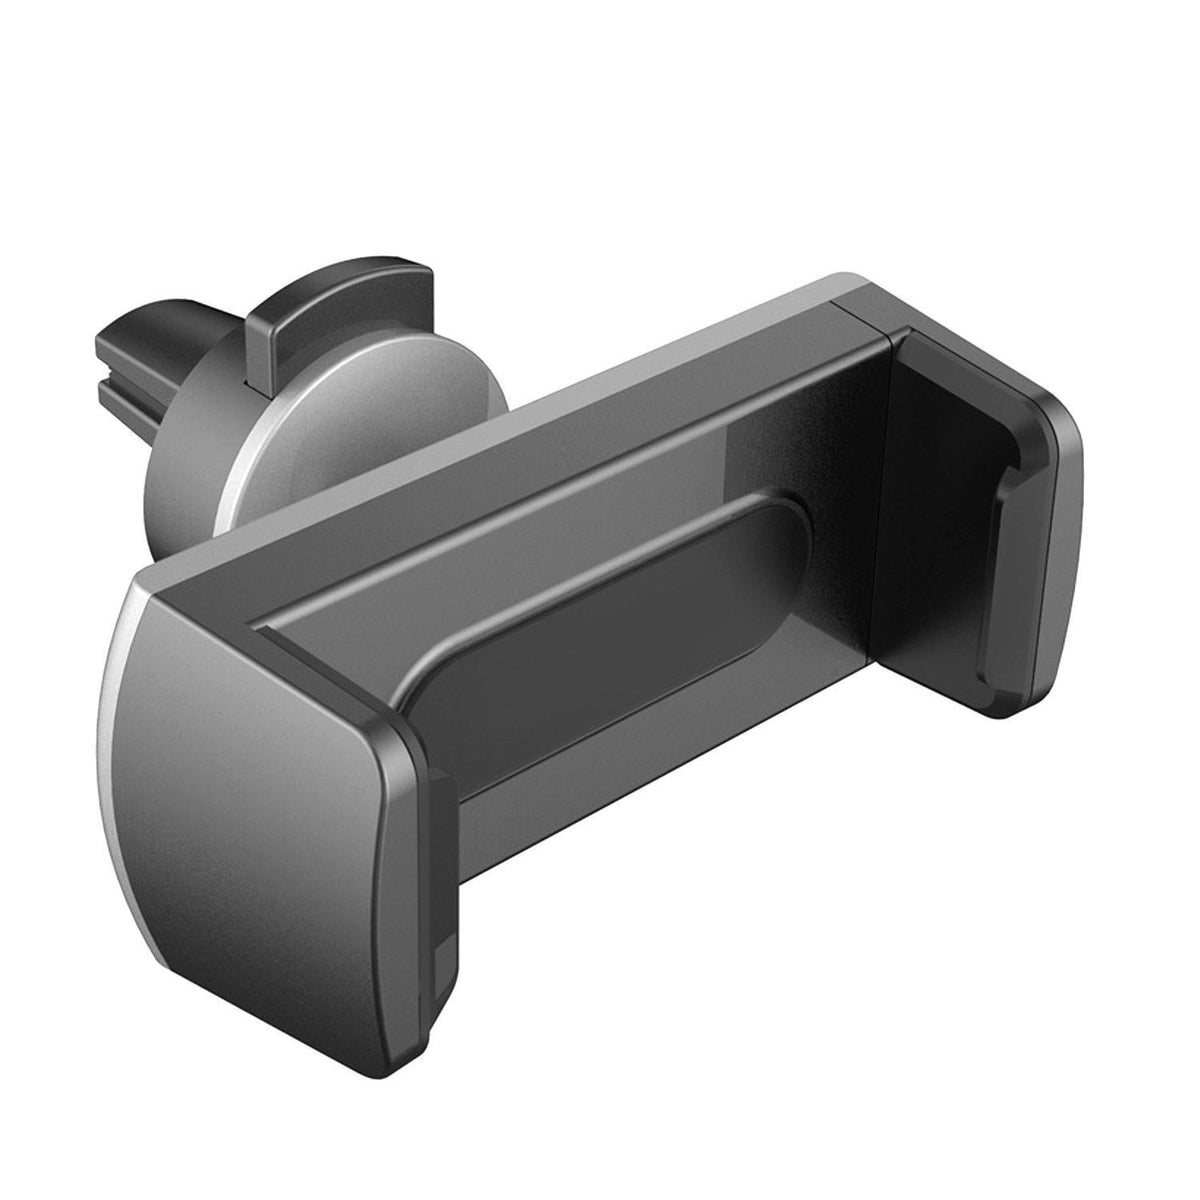 Tablet-Halter für die Kopfstütze des MC-816-Stuhls